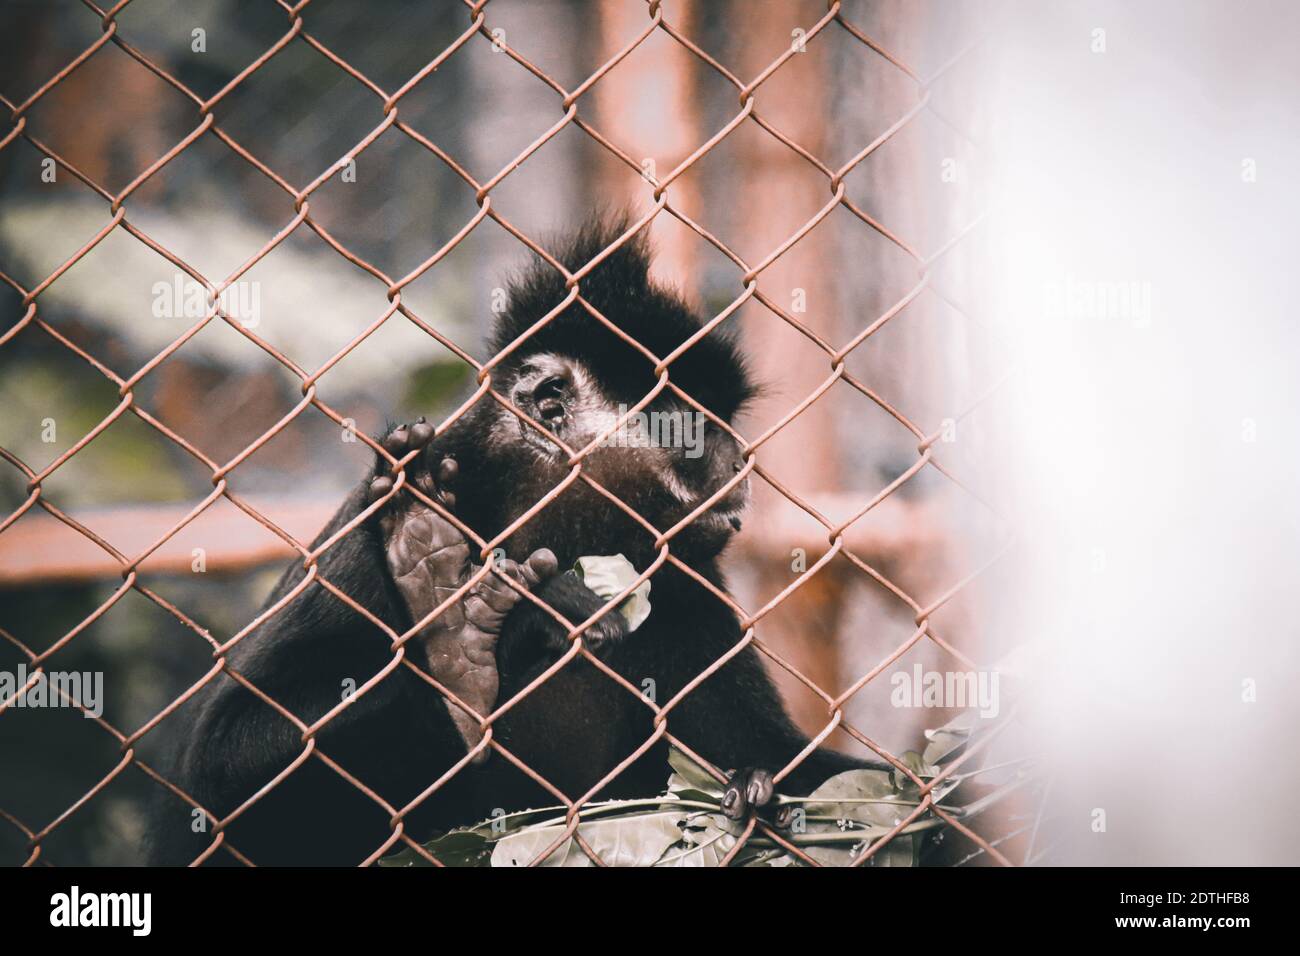 Black Crested Gibbon ou Nomascus concolor sauvé des braconniers et réhabilité au parc national CUC Phoung à Ninh Binh, Vietnam Banque D'Images